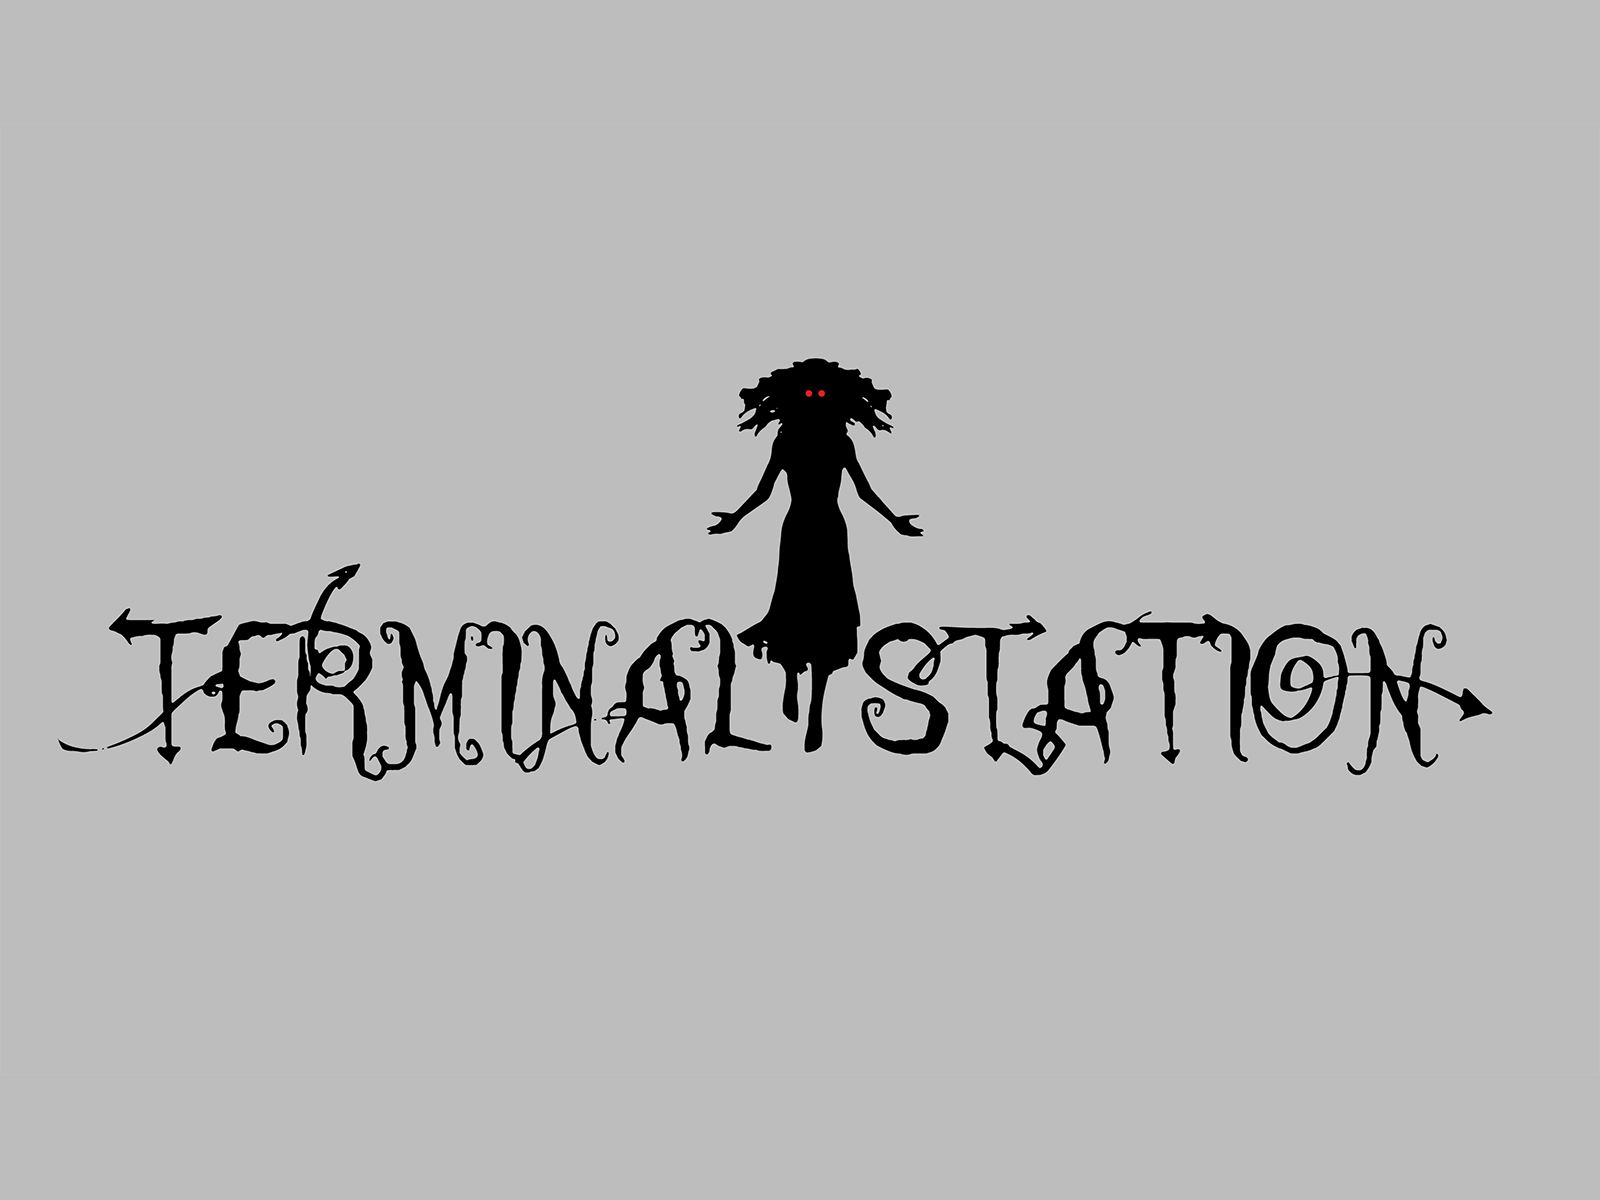 Terminal Station logo